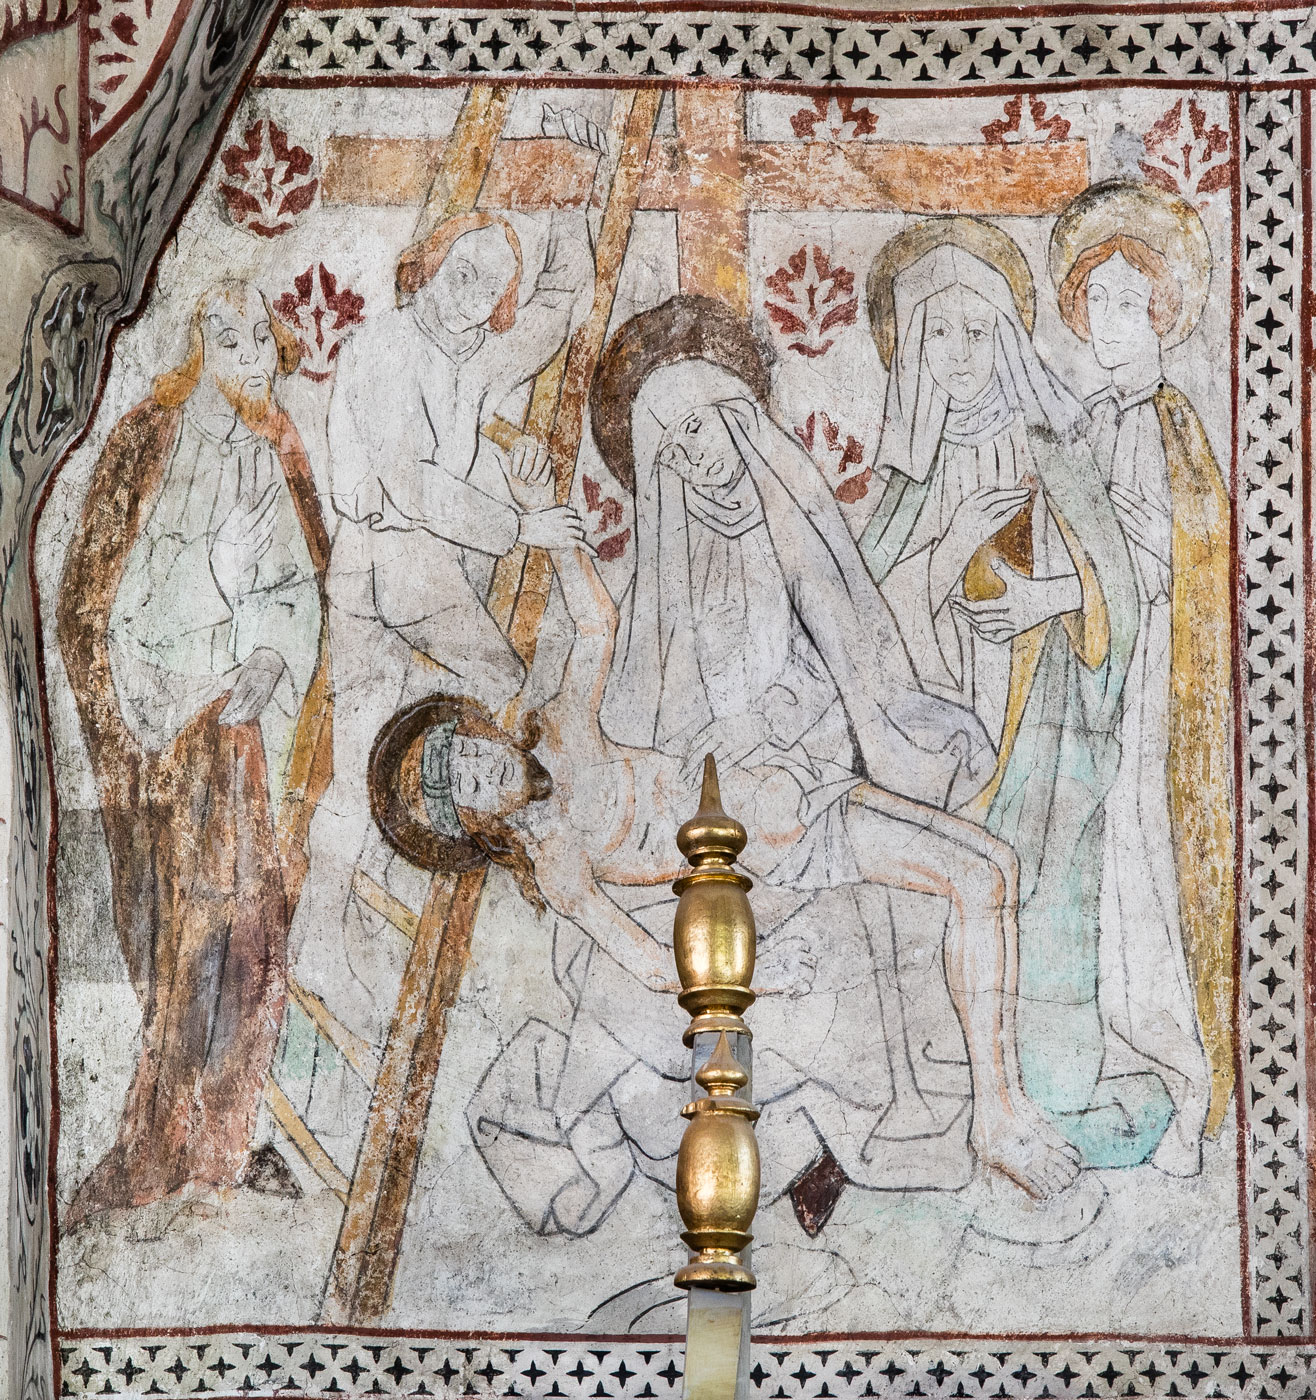 Nedtagandet från korset, Begråtandet av Kristus, och Pietà, den sörjande Maria med den döde Kristus i famnen - Odensala kyrka